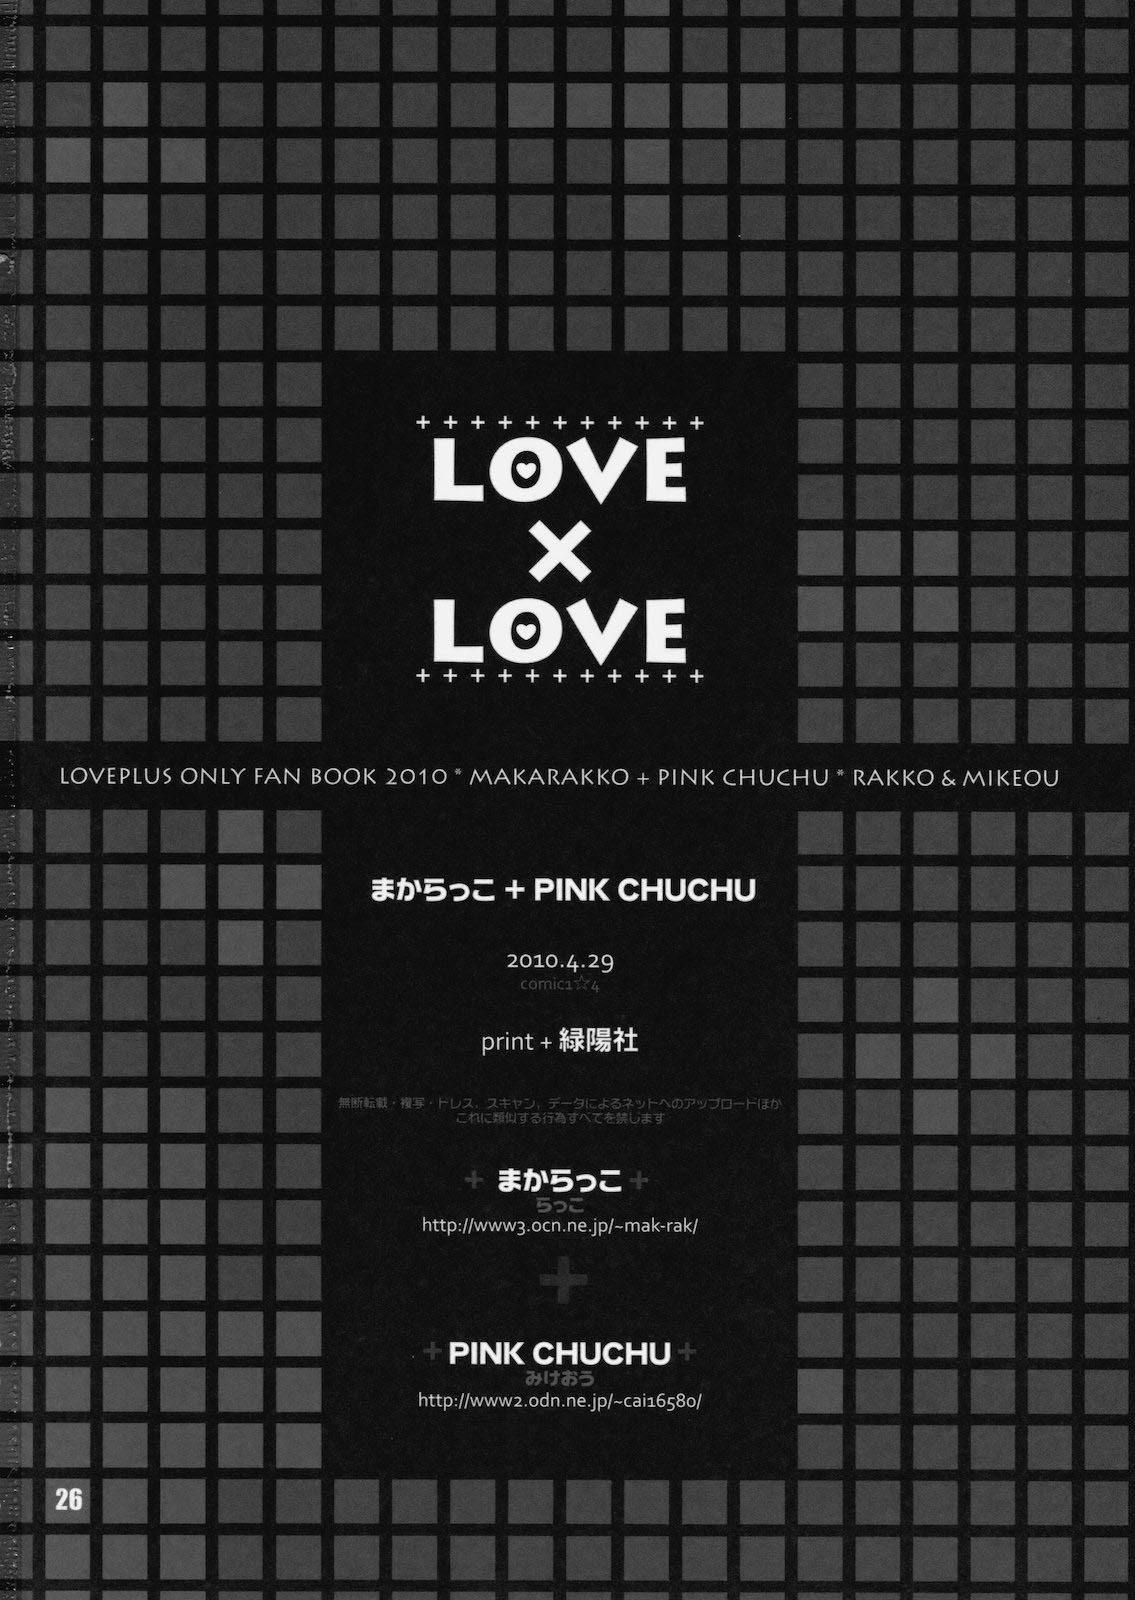 (COMIC1☆4) [まからっこ、PINK CHUCHU (らっこ、みけおう) LOVE X LOVE (ラブプラス)